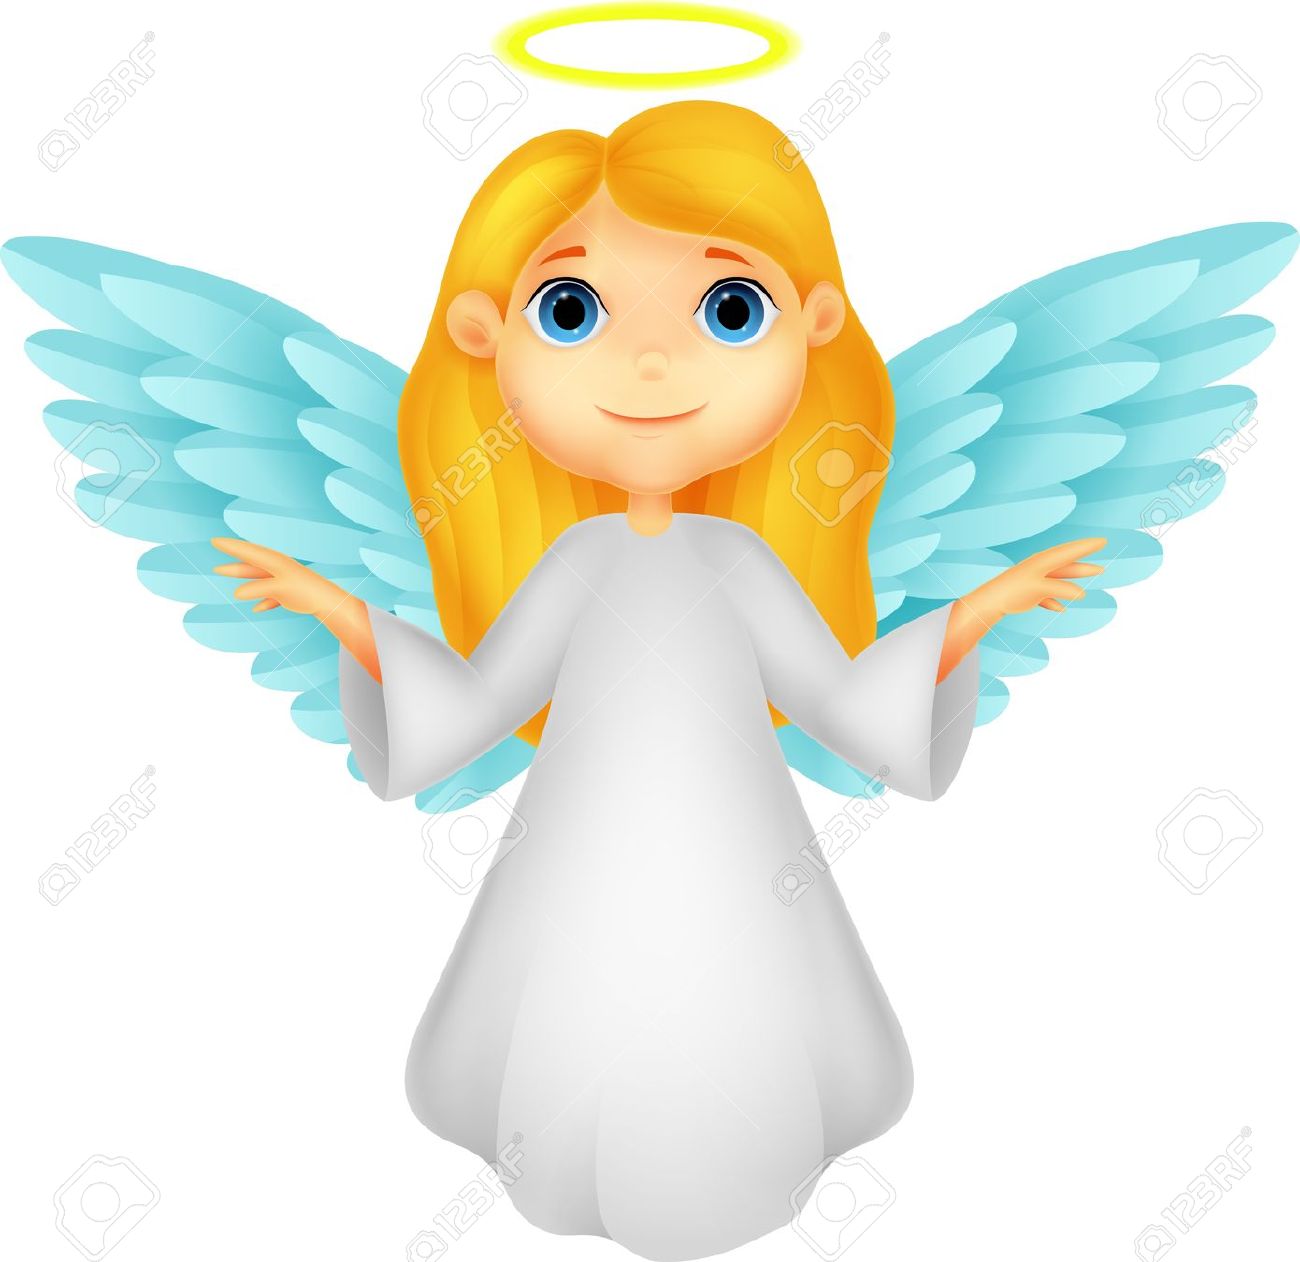 Christmas Angel Clipart. 20754058-Cute-angel-cartoon--Stock-Vector-christmas.jpg